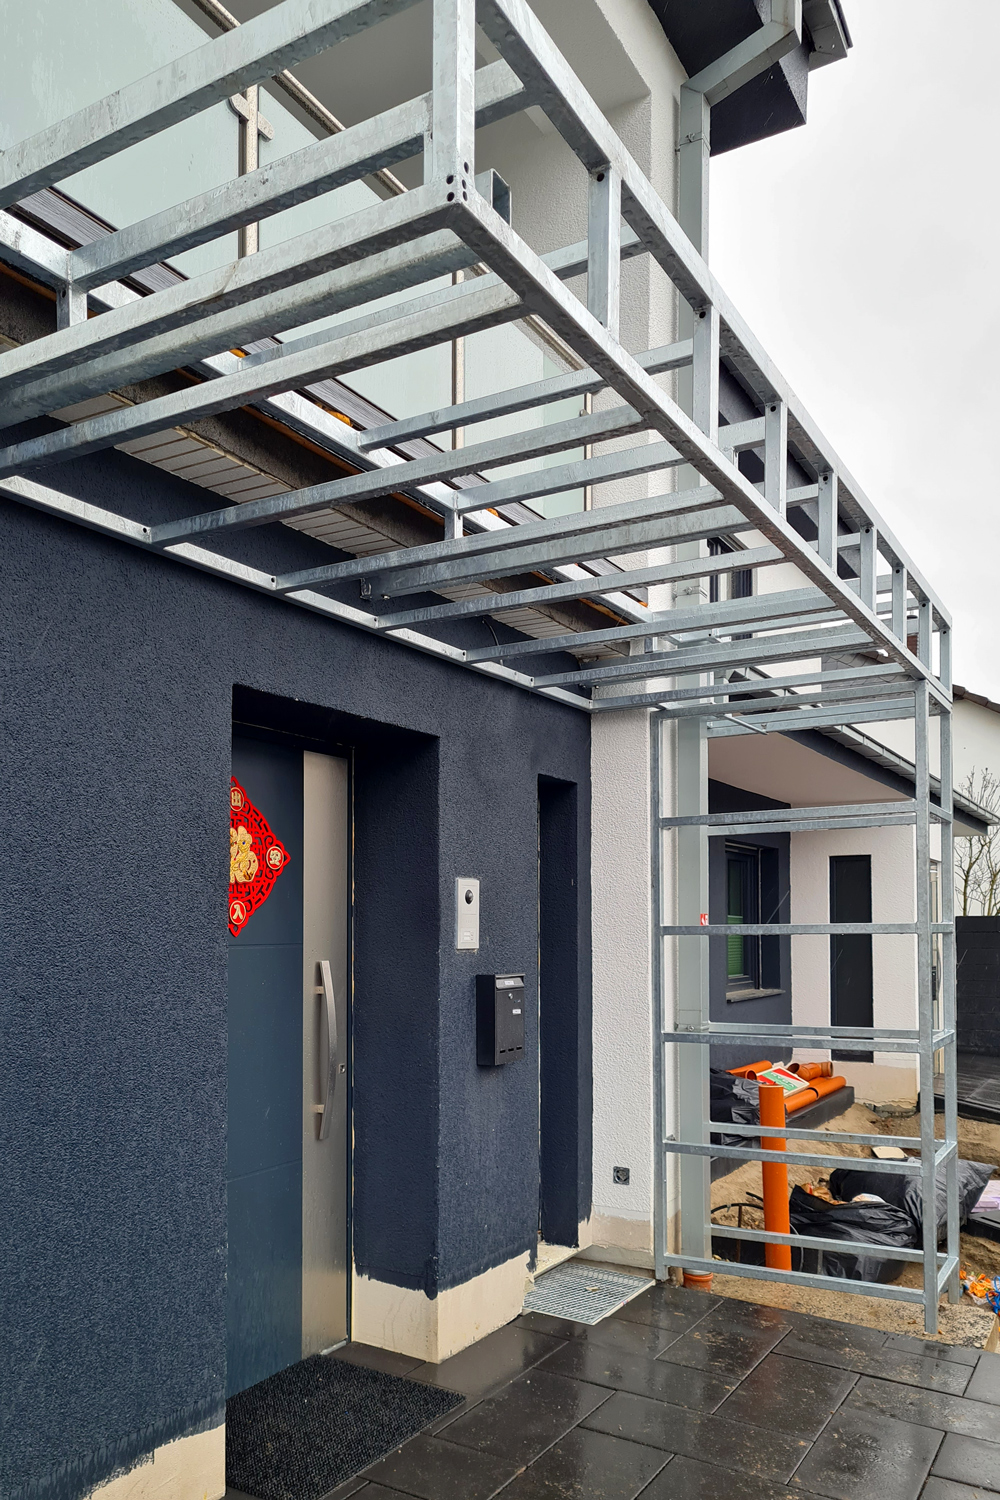 Edelstahlschlosserei verwandelt eine eckige Stahlkonstruktion in ein modernes Vordach in Düsseldorf